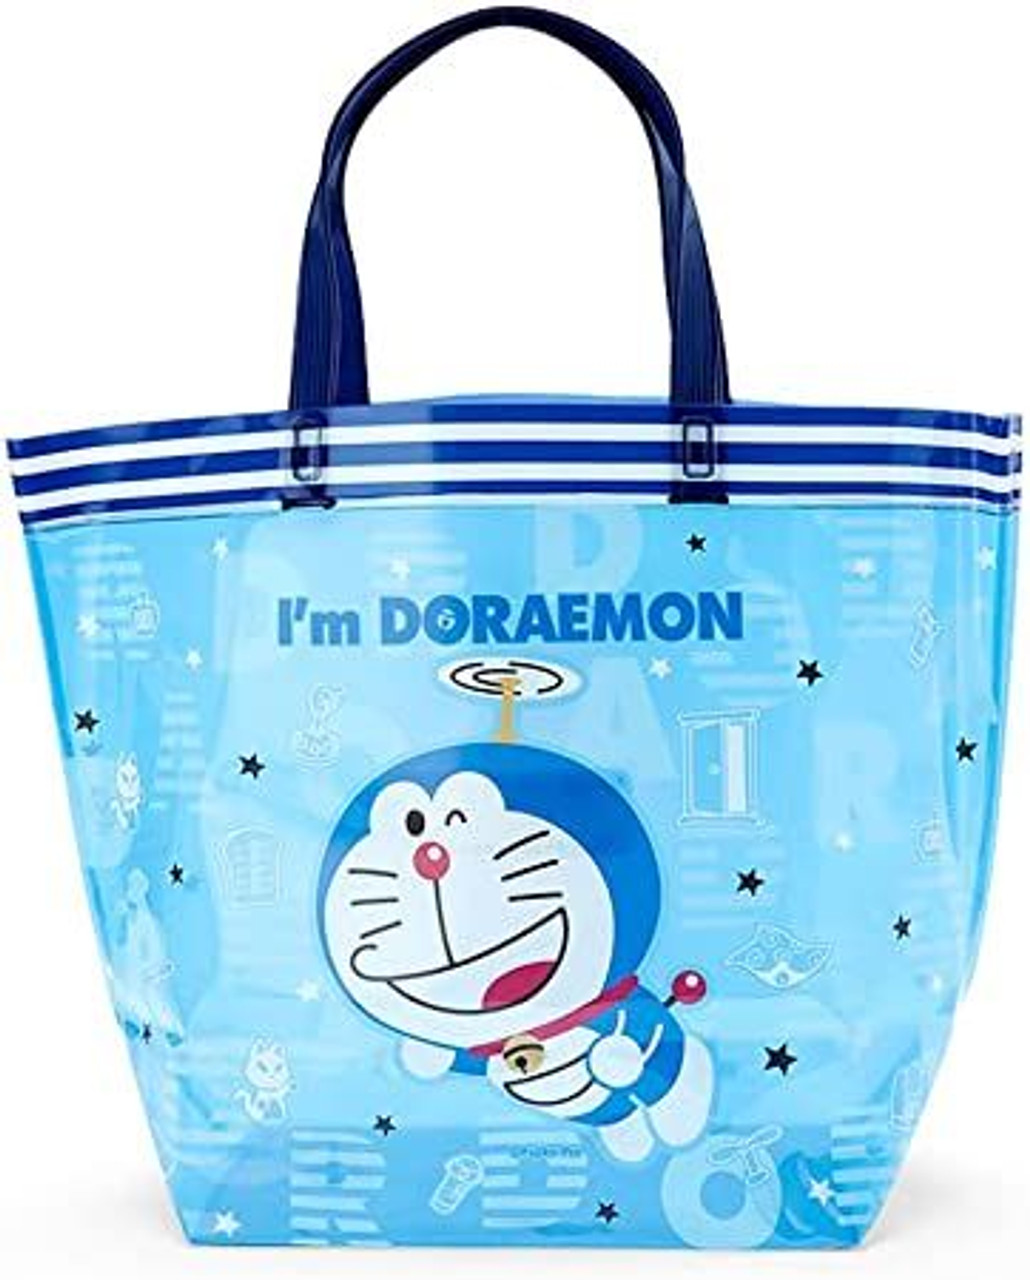 Doraemon Bag - Etsy